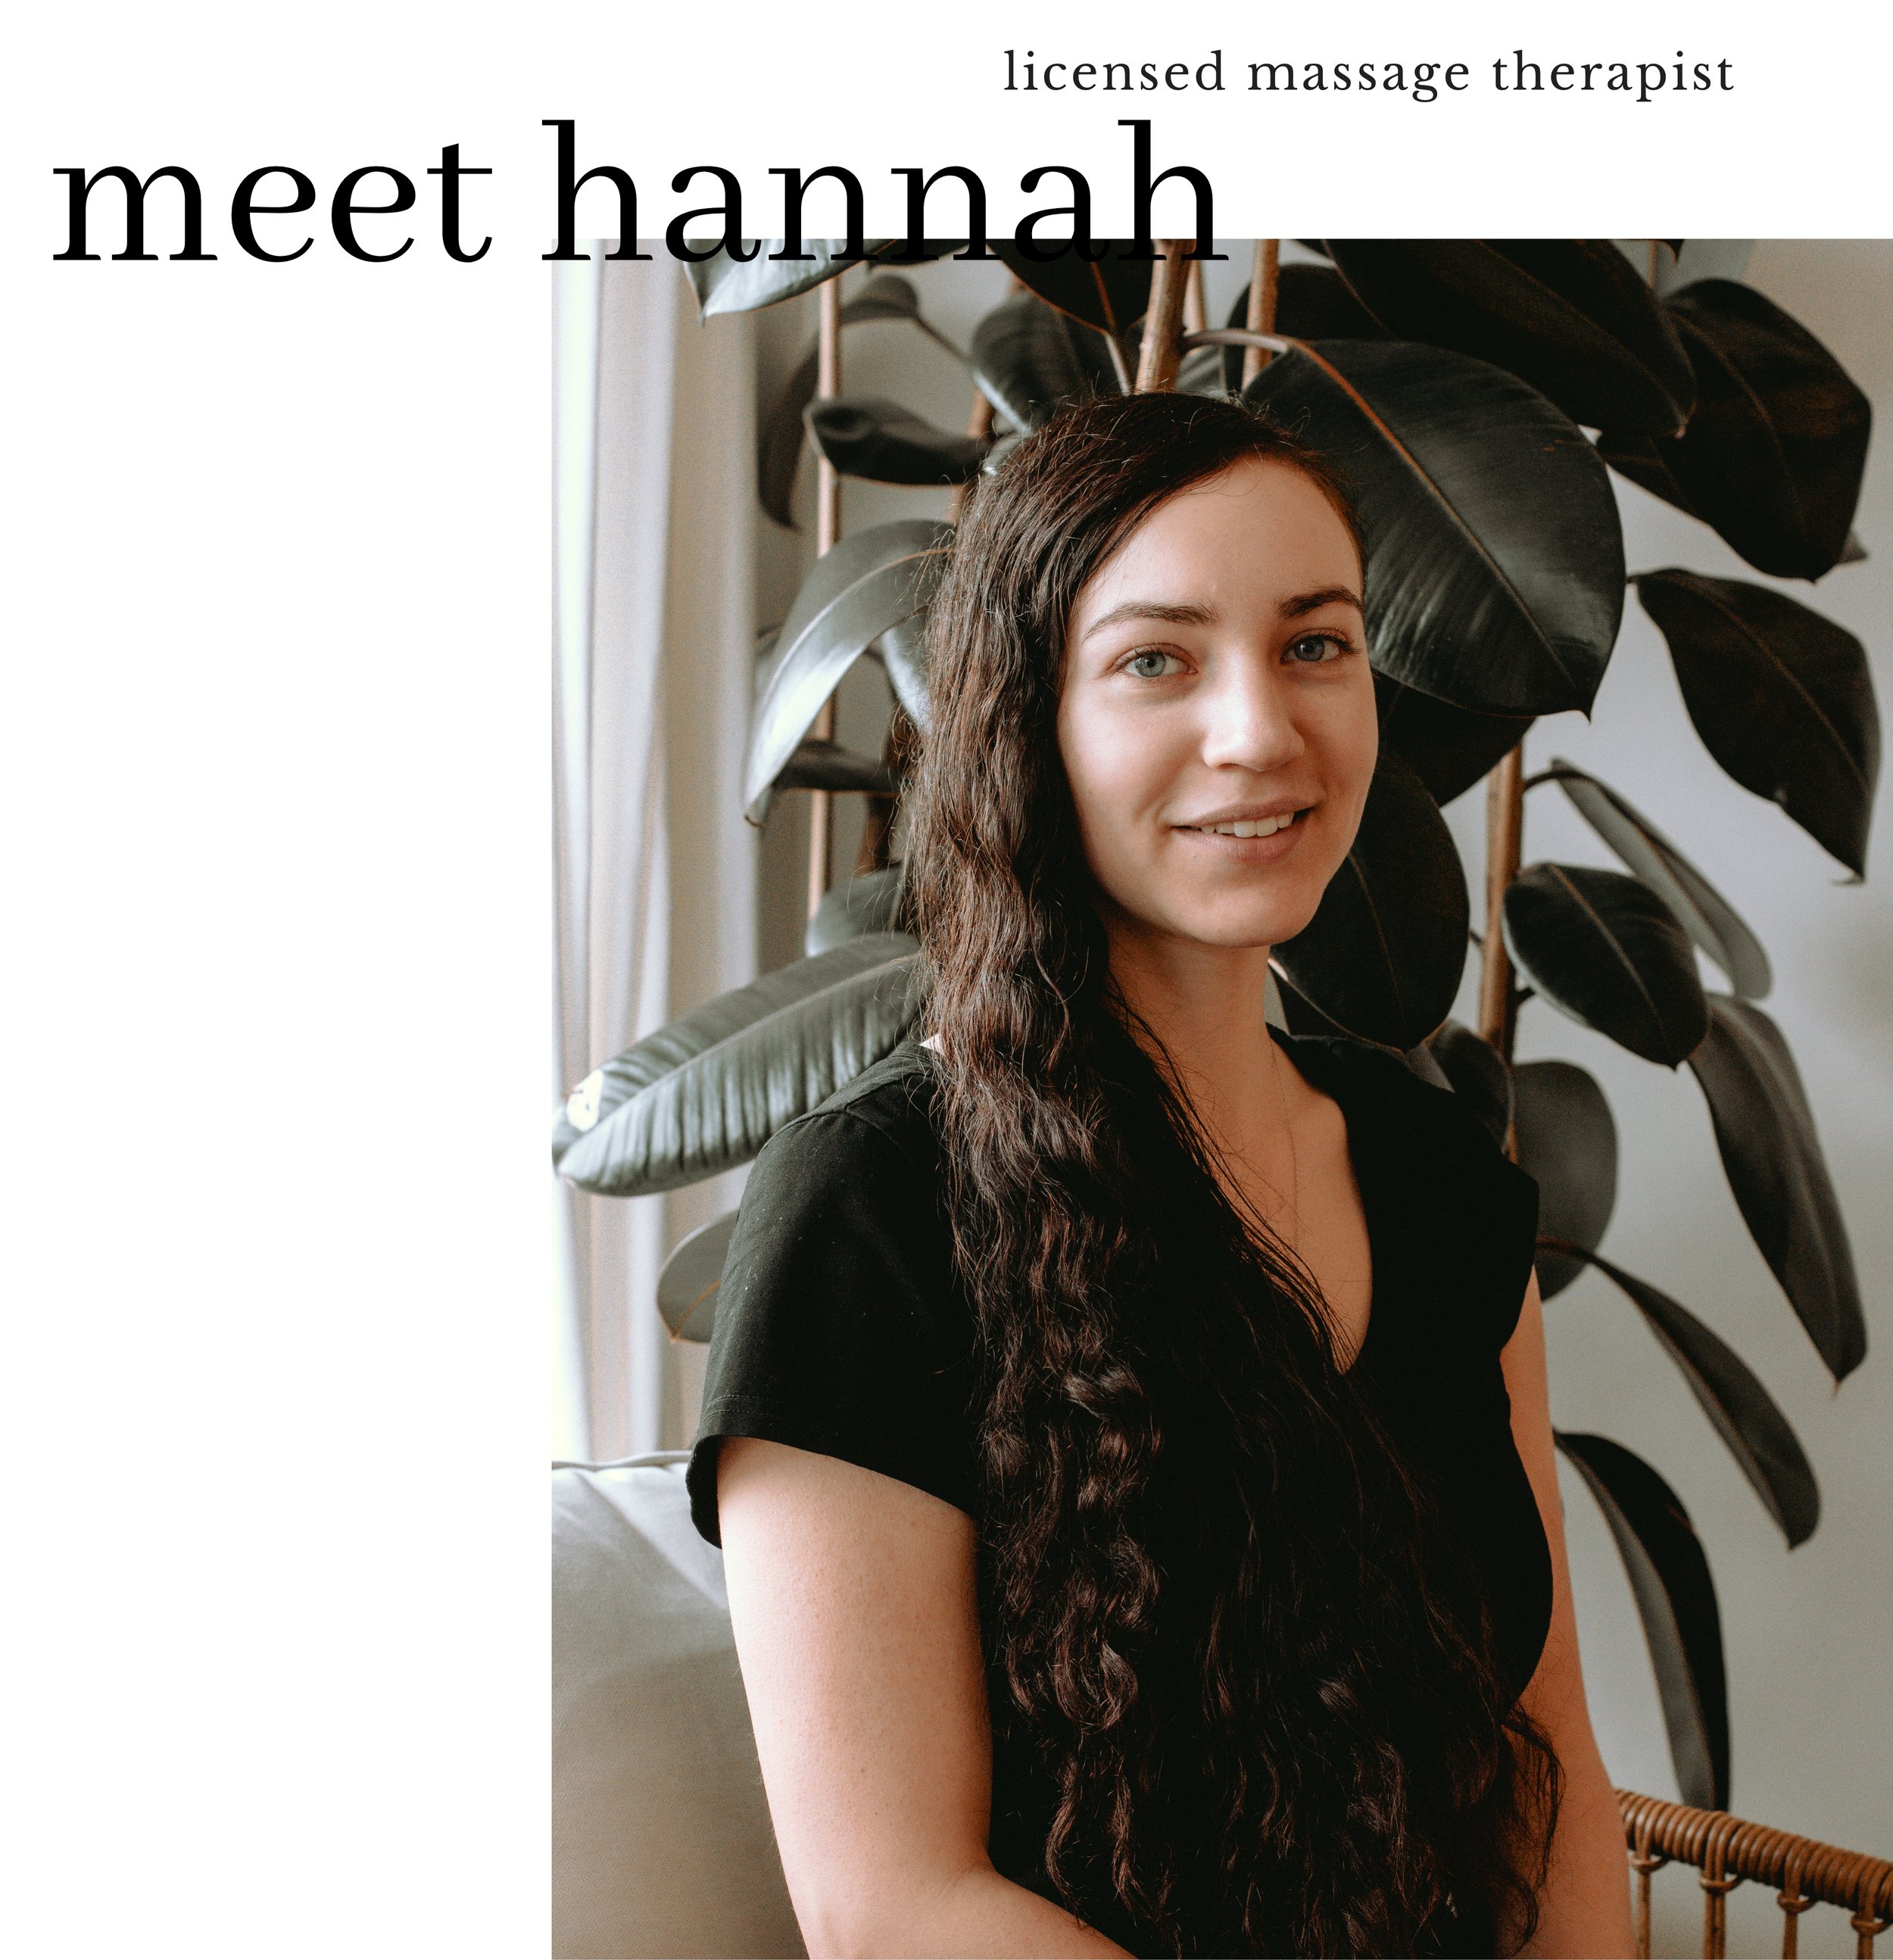 meet hannah + massage therapist.jpg